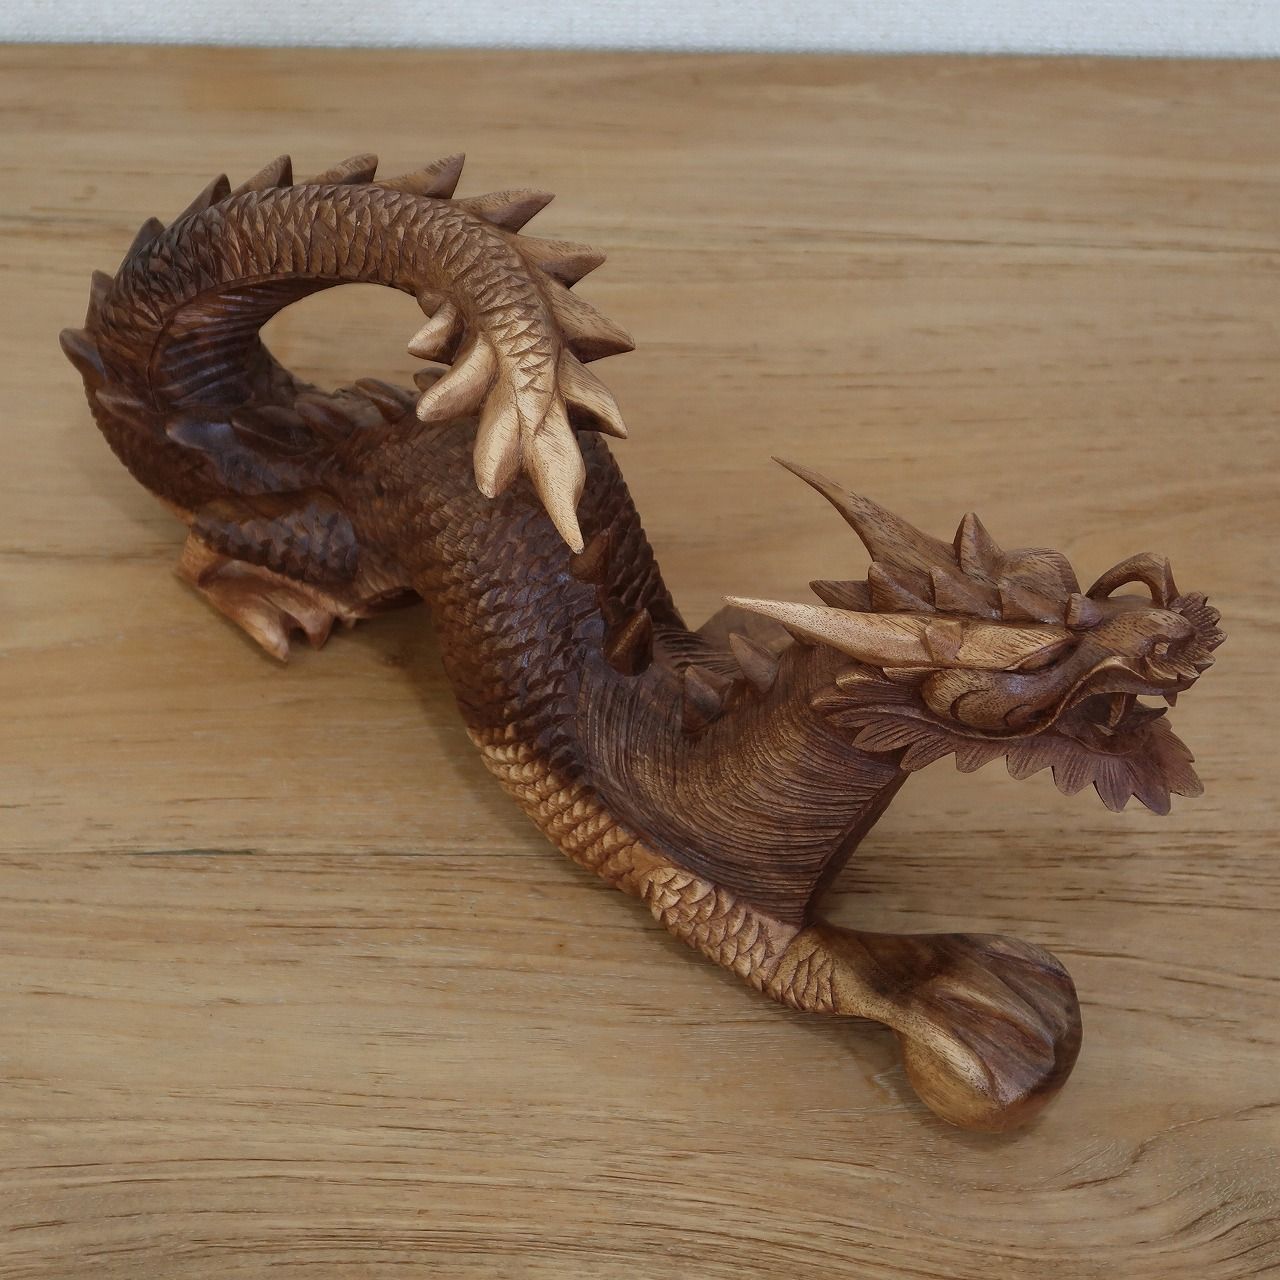 ドラゴンの木彫り 龍の木彫り スワール無垢材 左向き 40cm 竜の木彫り